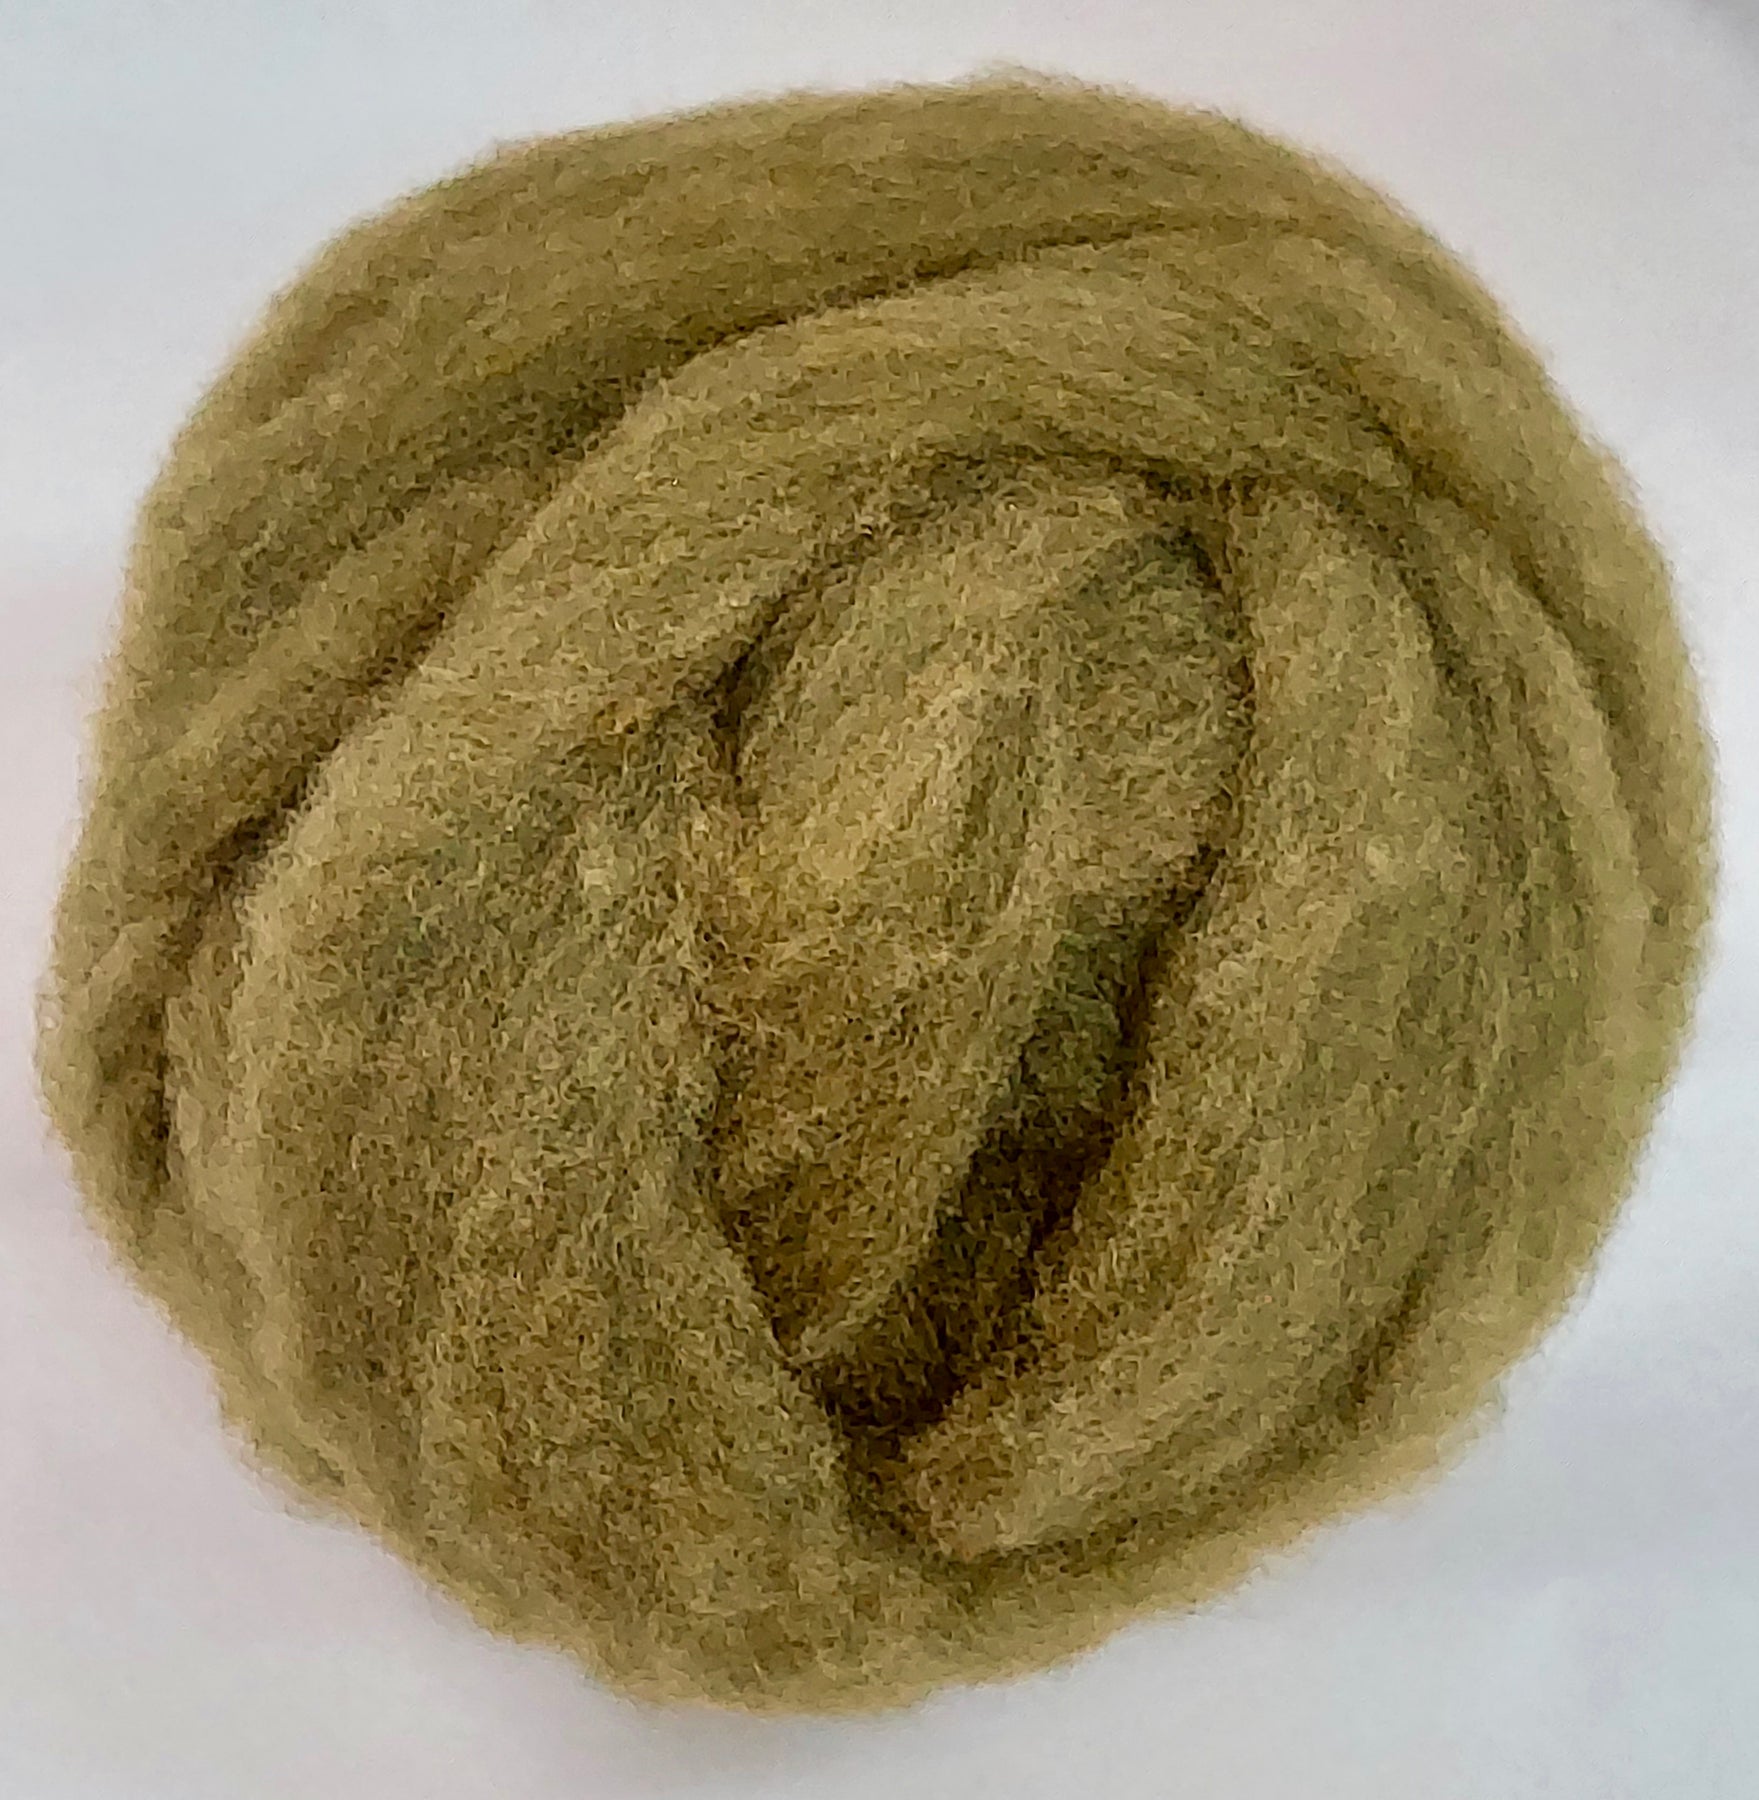 KHAKI DRAB- American Farm Wool- Merino Wool Roving for Felting